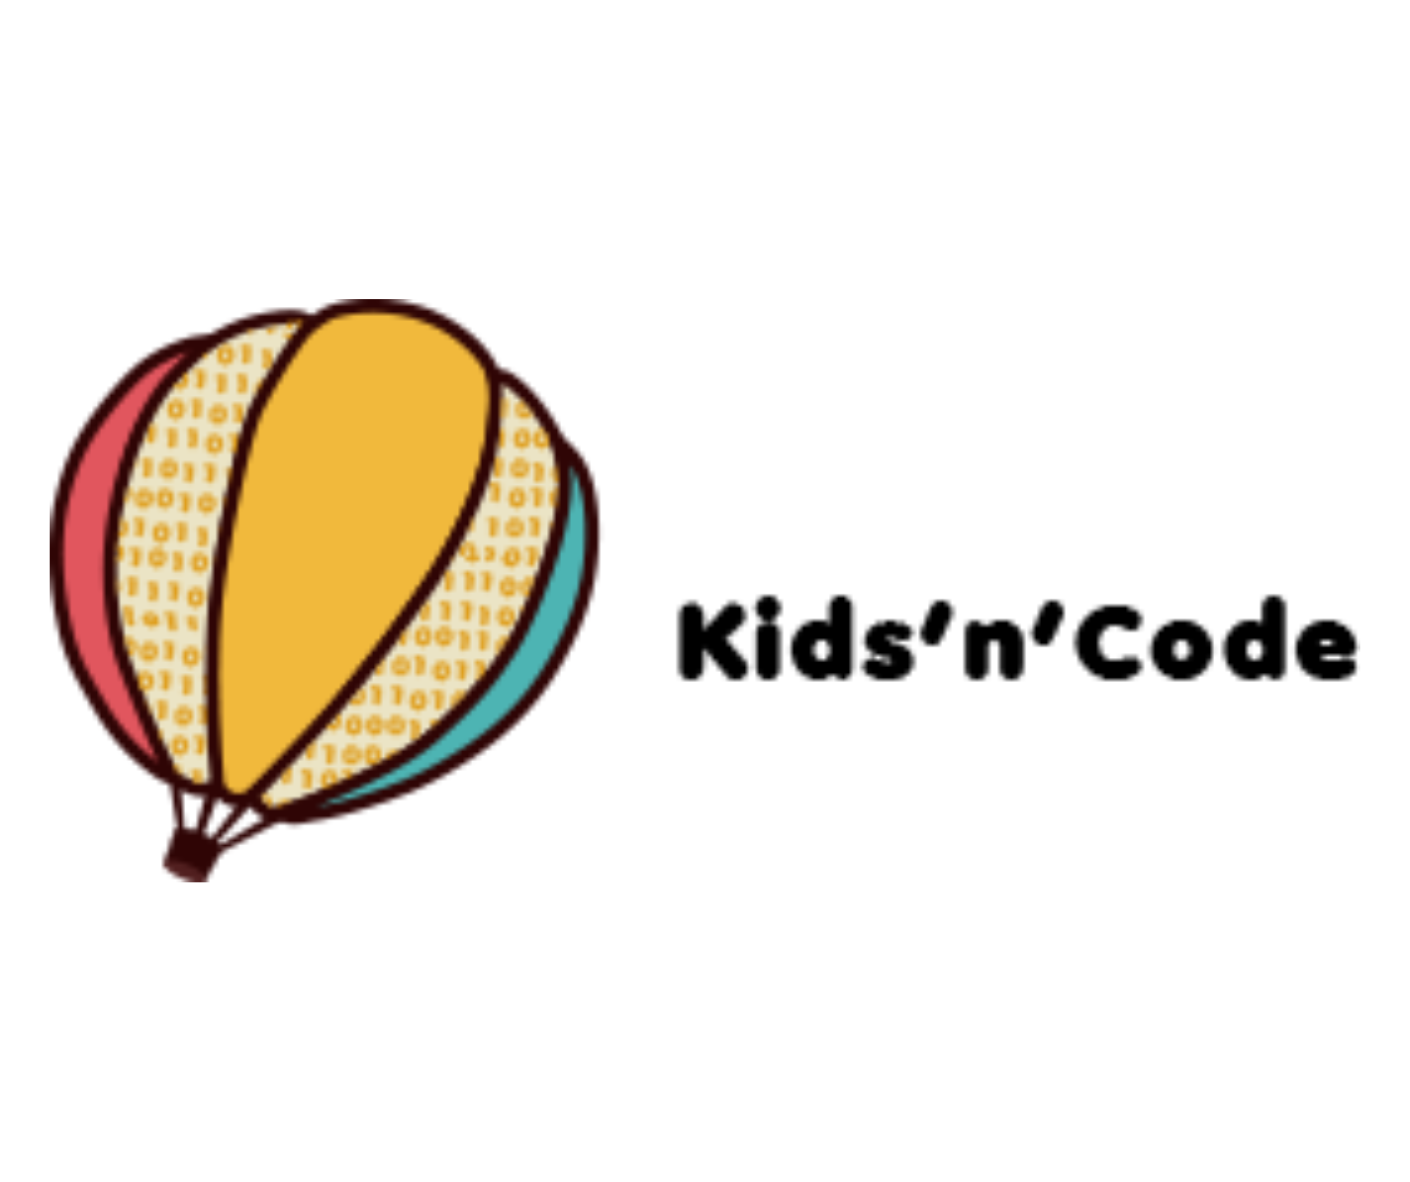 Kids'n'Code